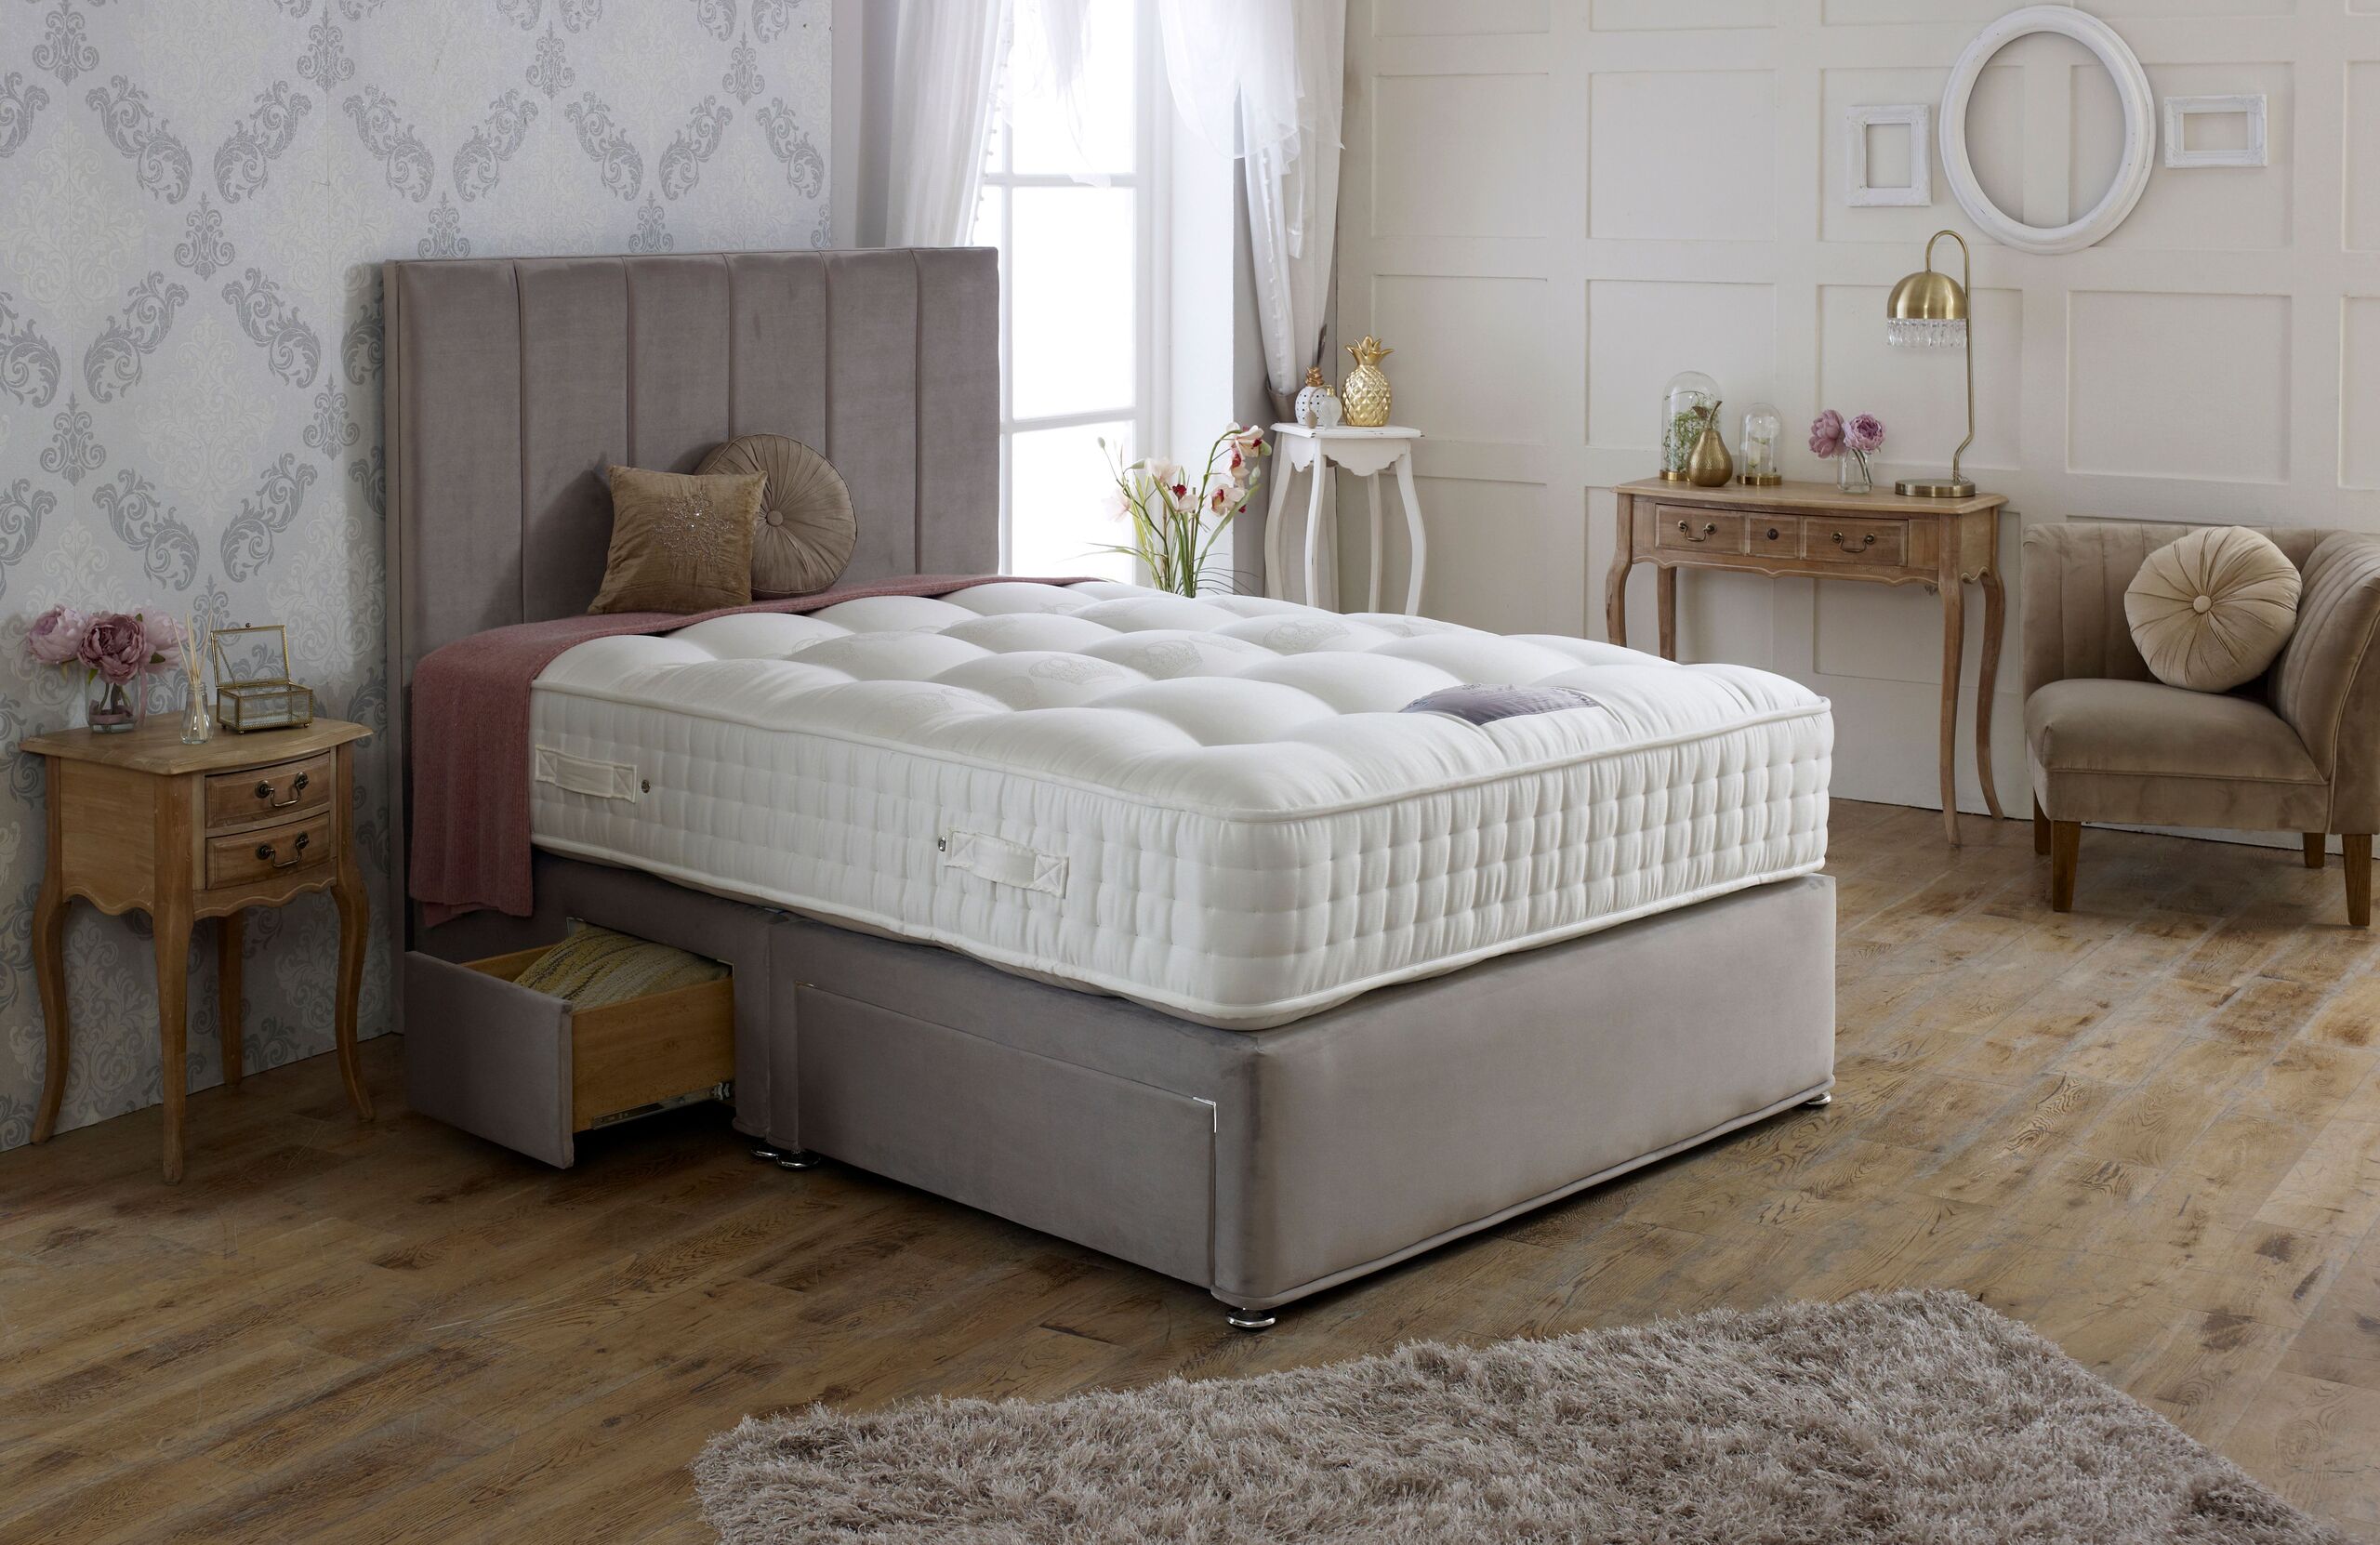 royal crown mattress review